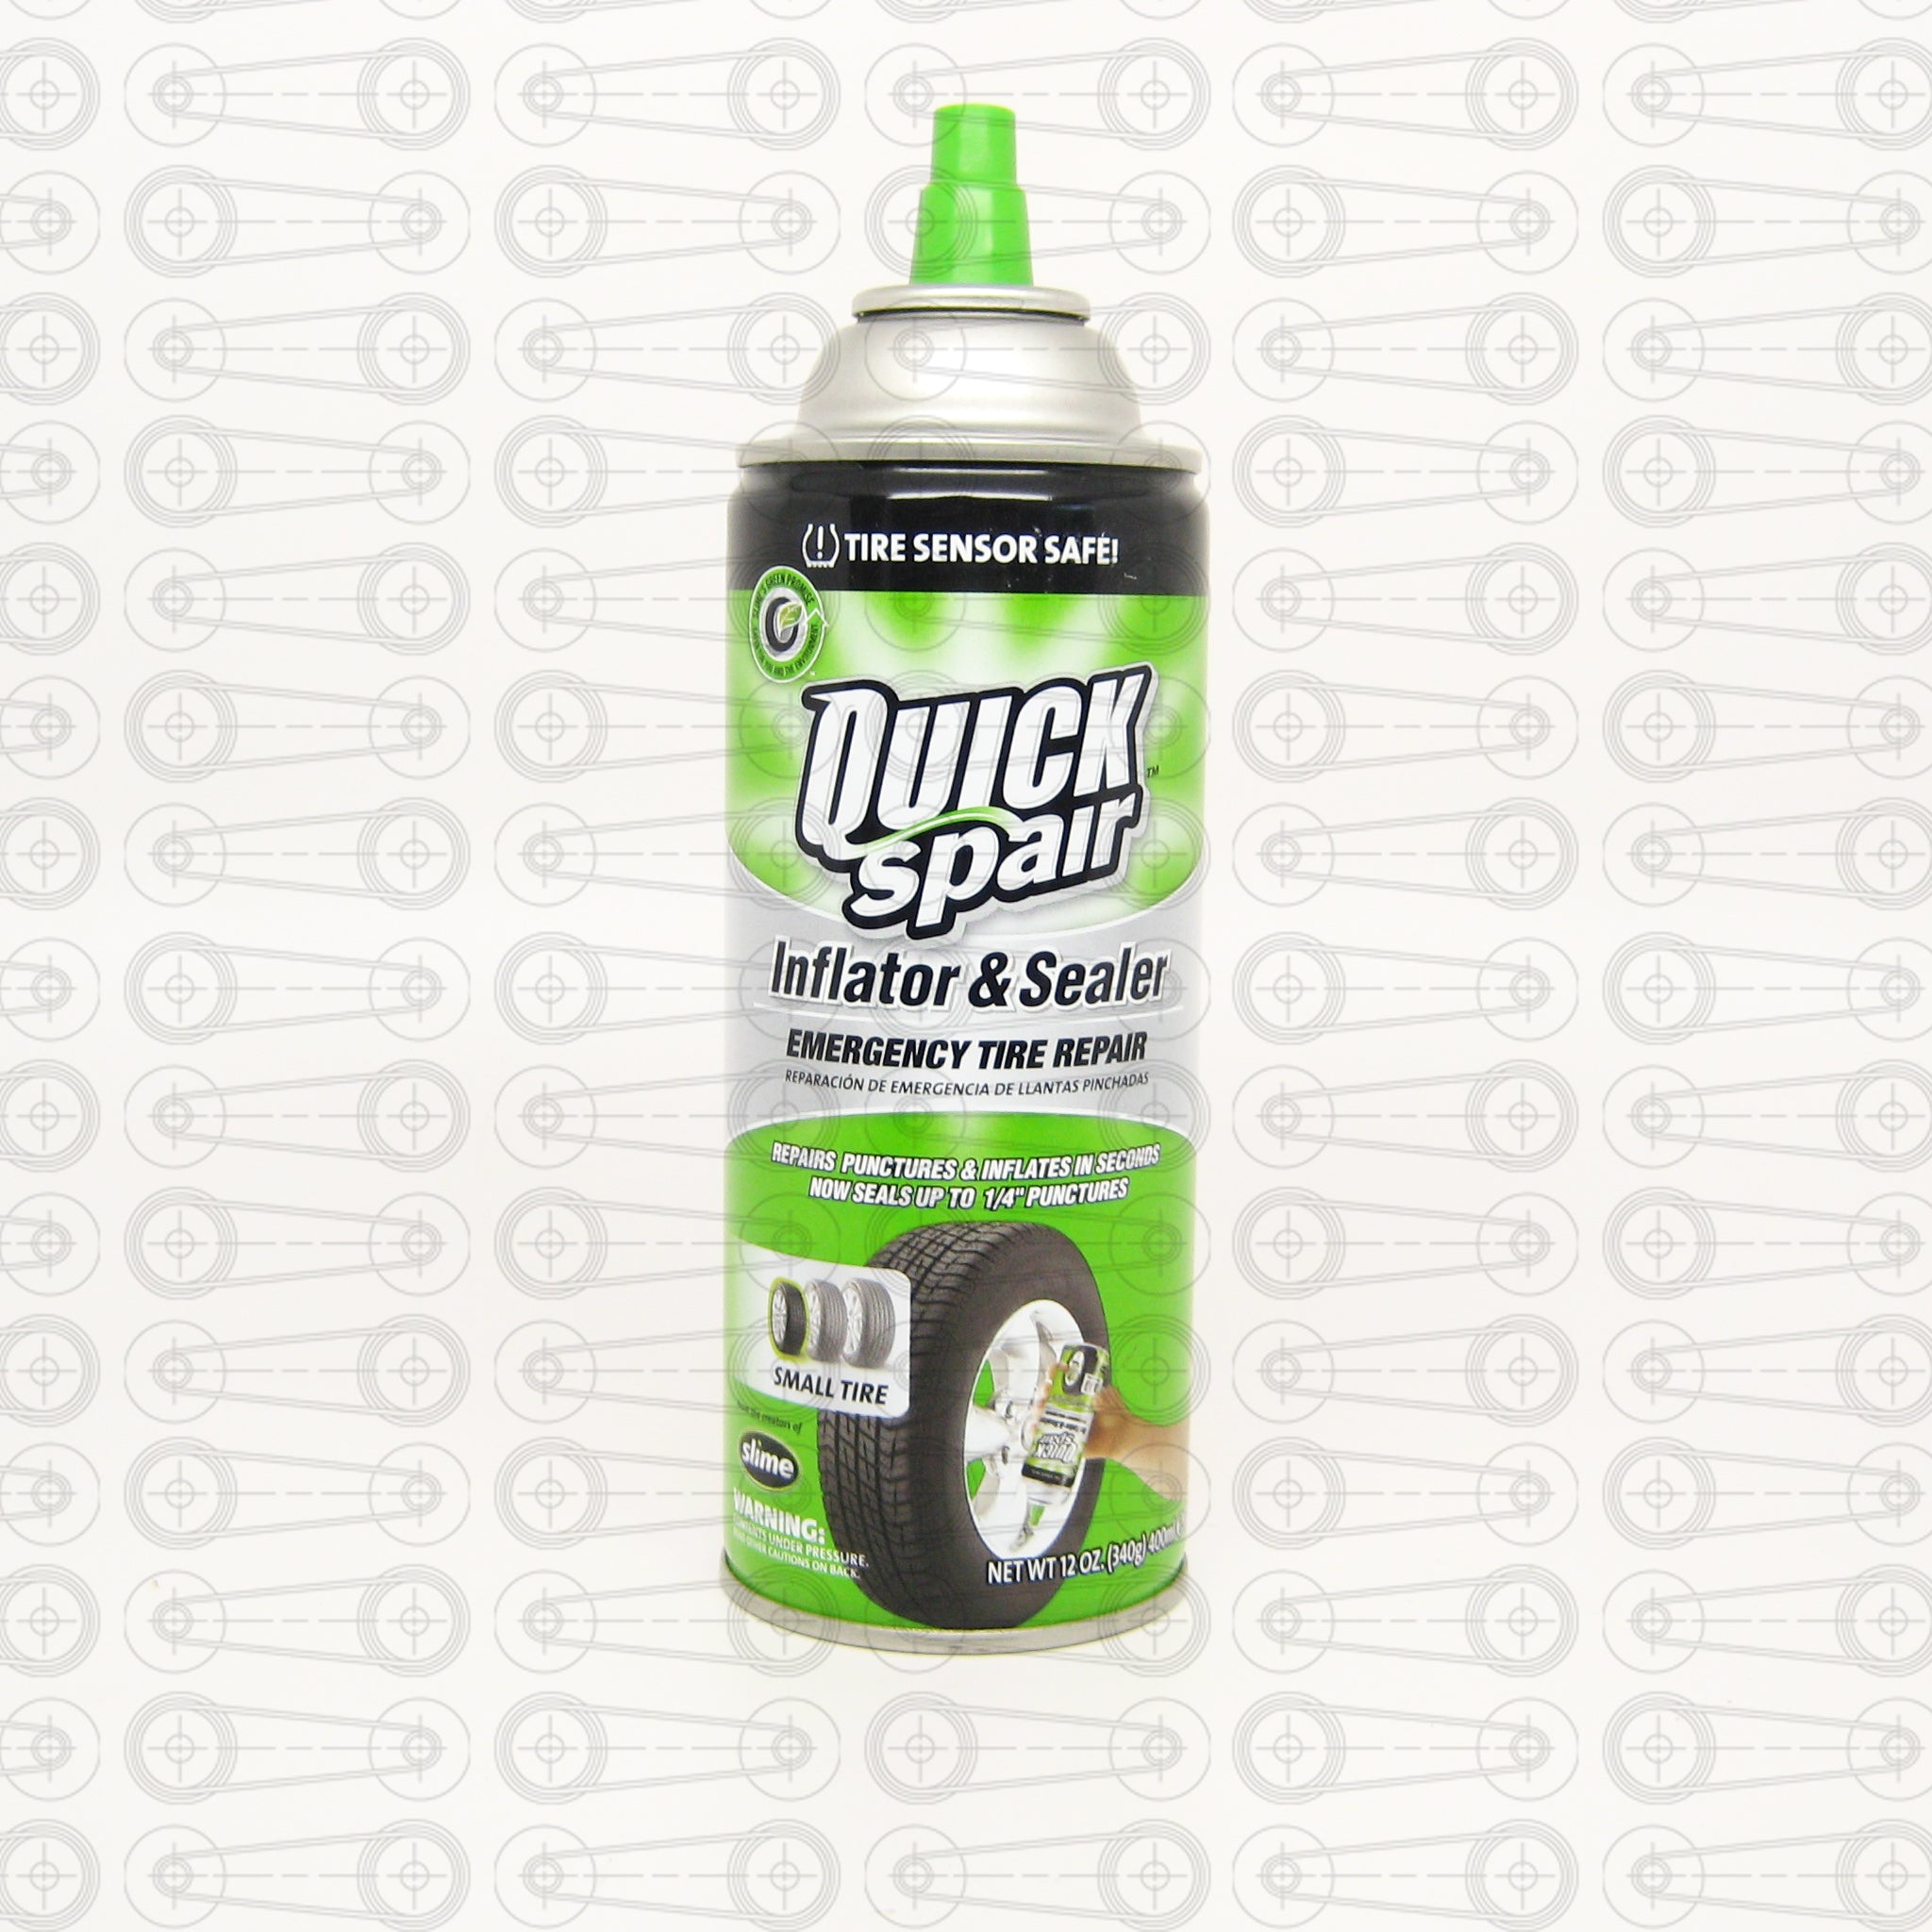 Quick Spair - One-Step Emergency Tire Repair